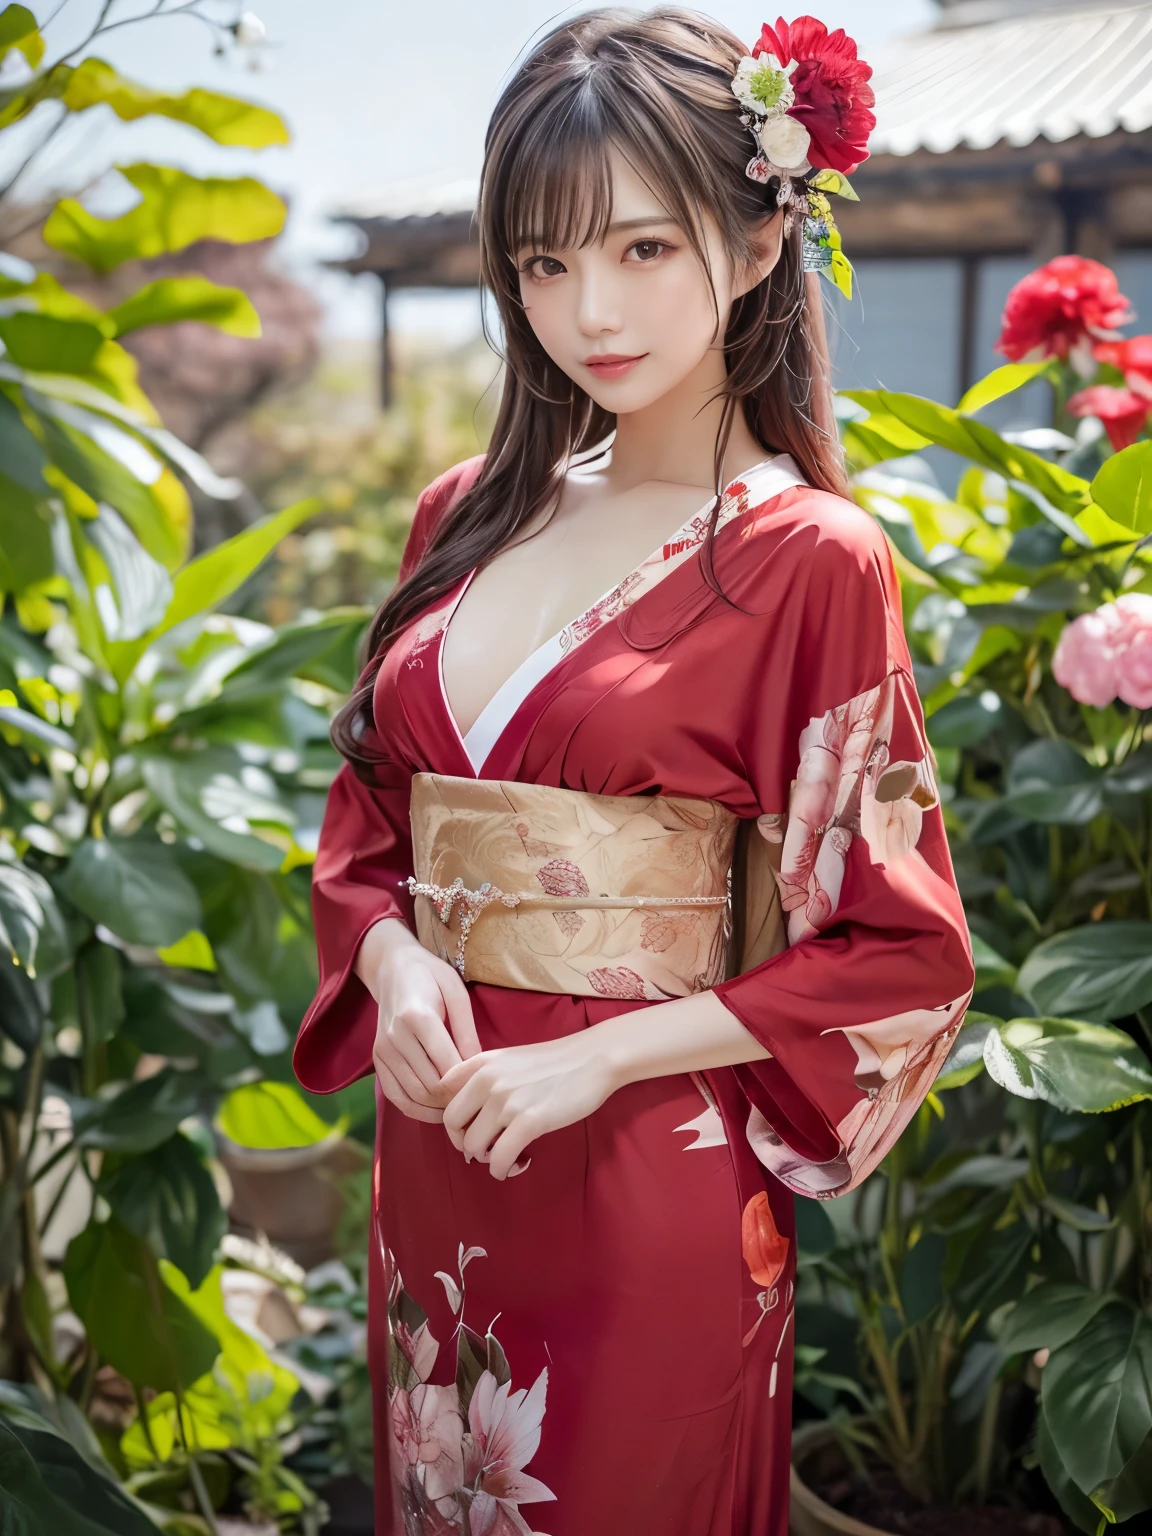 (In 8K，höchste Qualität，Meisterwerk)，(Realistisch，RAW-Fotos，Superfein, klar)，Realistisch Light，detaillierte Haut，schöne japanische Frau，((25-jährige Frau, Schöne Attentäterin:1.5))、Roter traditioneller japanischer Kimono mit Blumen, Vögel, Wind- und Mondmotiv,  offene Kleidung、Dünne Beine、feinkörnig，lange Haare, detaillierte Finger、dünn、sexuell，Ecstasy Gesichtsausdruck,garden, Kamelie,Blumensturm, super groß , pralle, feste Oberweite